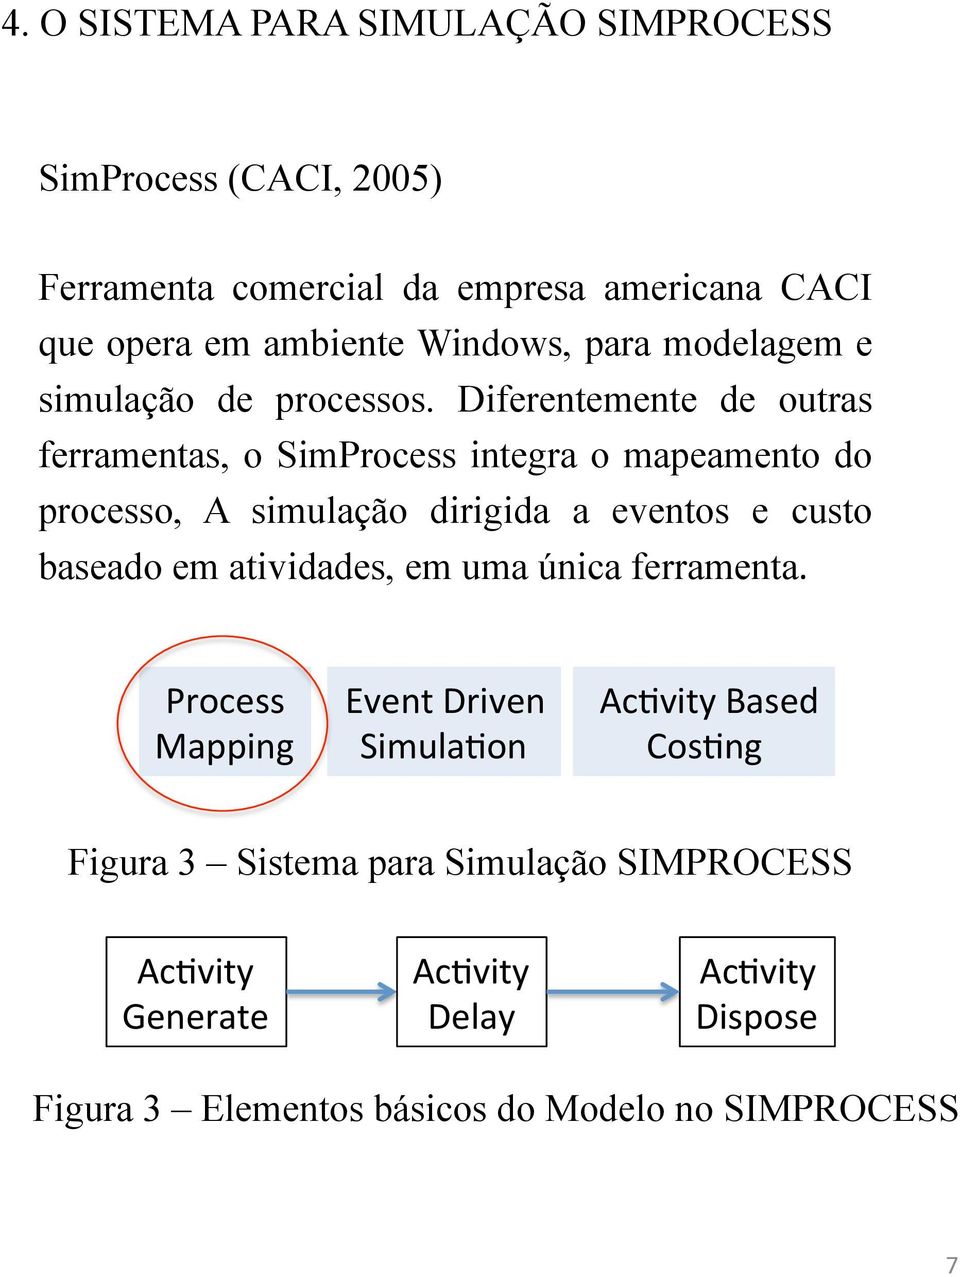 Diferentemente de outras ferramentas, o SimProcess integra o mapeamento do processo, A simulação dirigida a eventos e custo baseado em